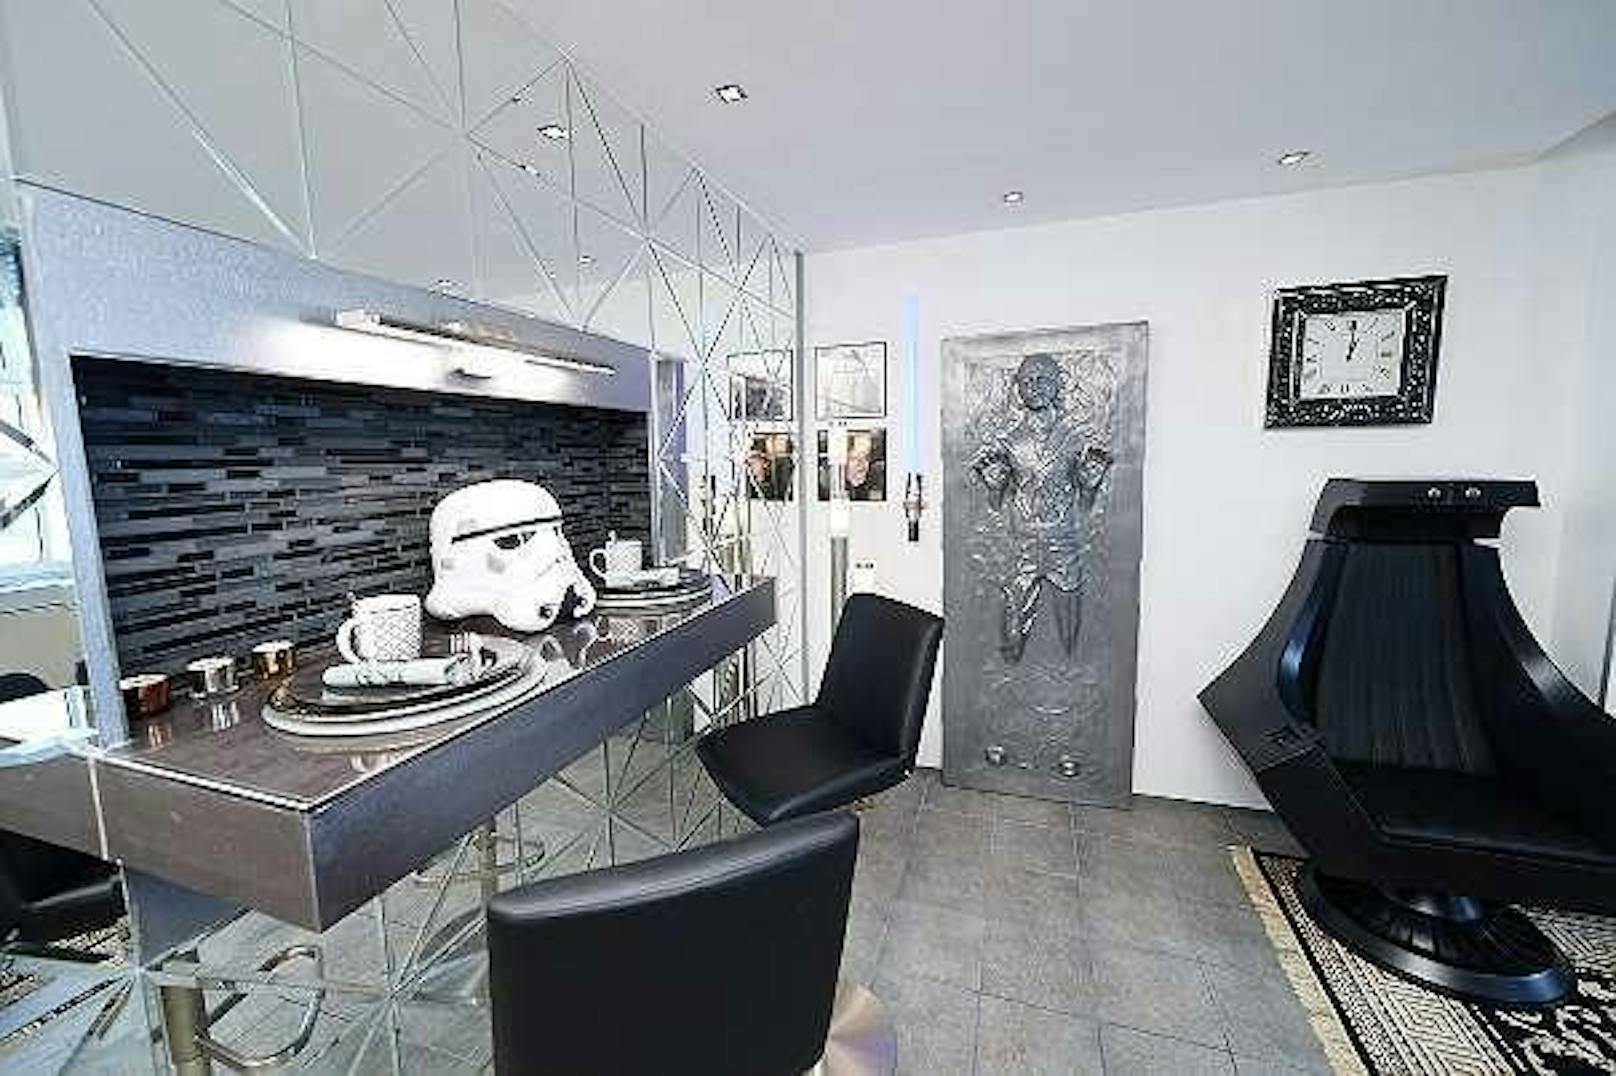 Die Wohnung von Michael K. ist ein echtes Schmankerl für alle "Star Wars"-Fans.